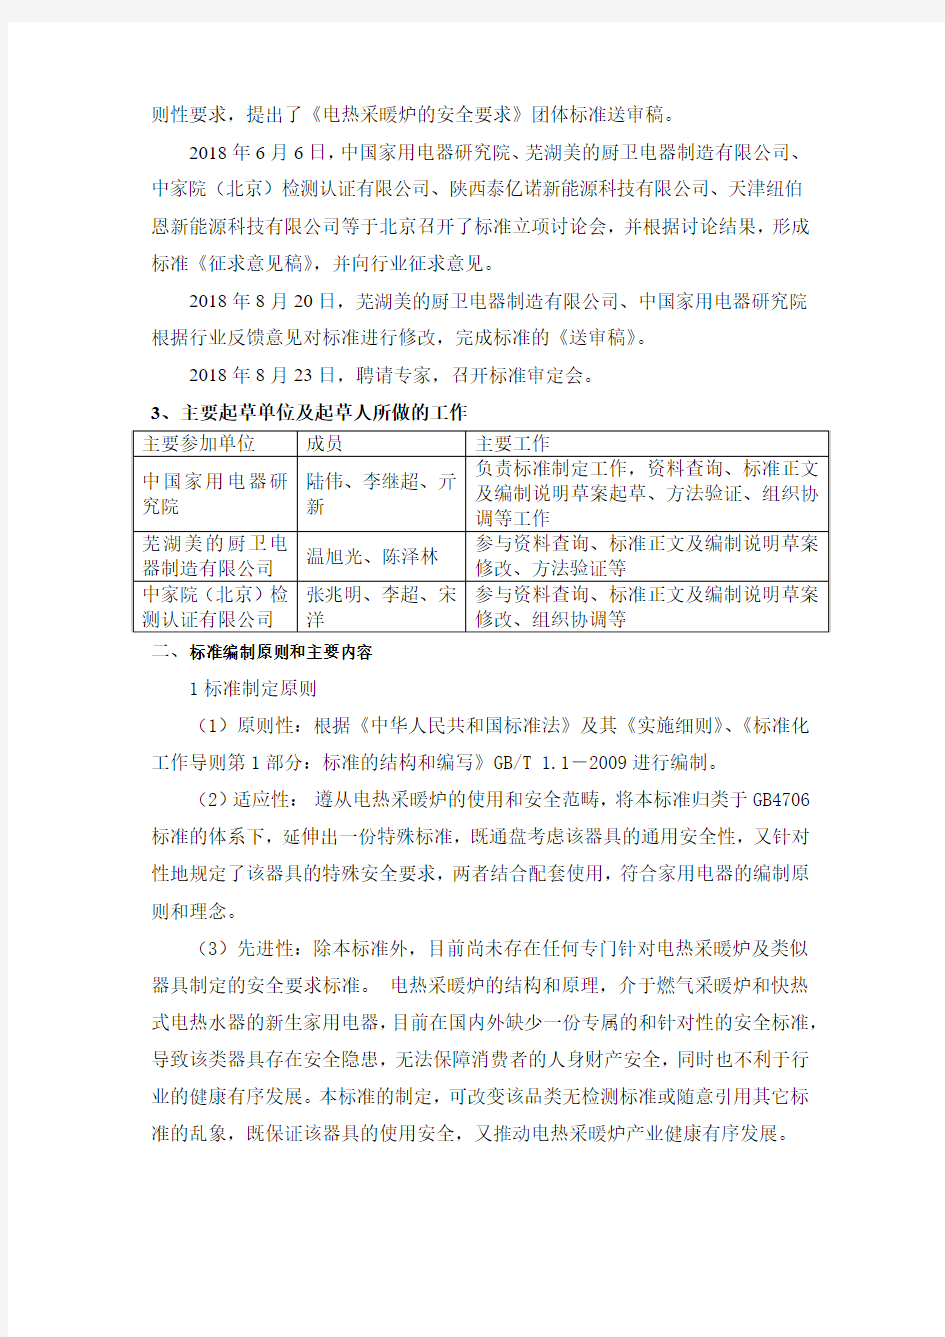 中国标准化协会标准《电热采暖炉的安全要求》